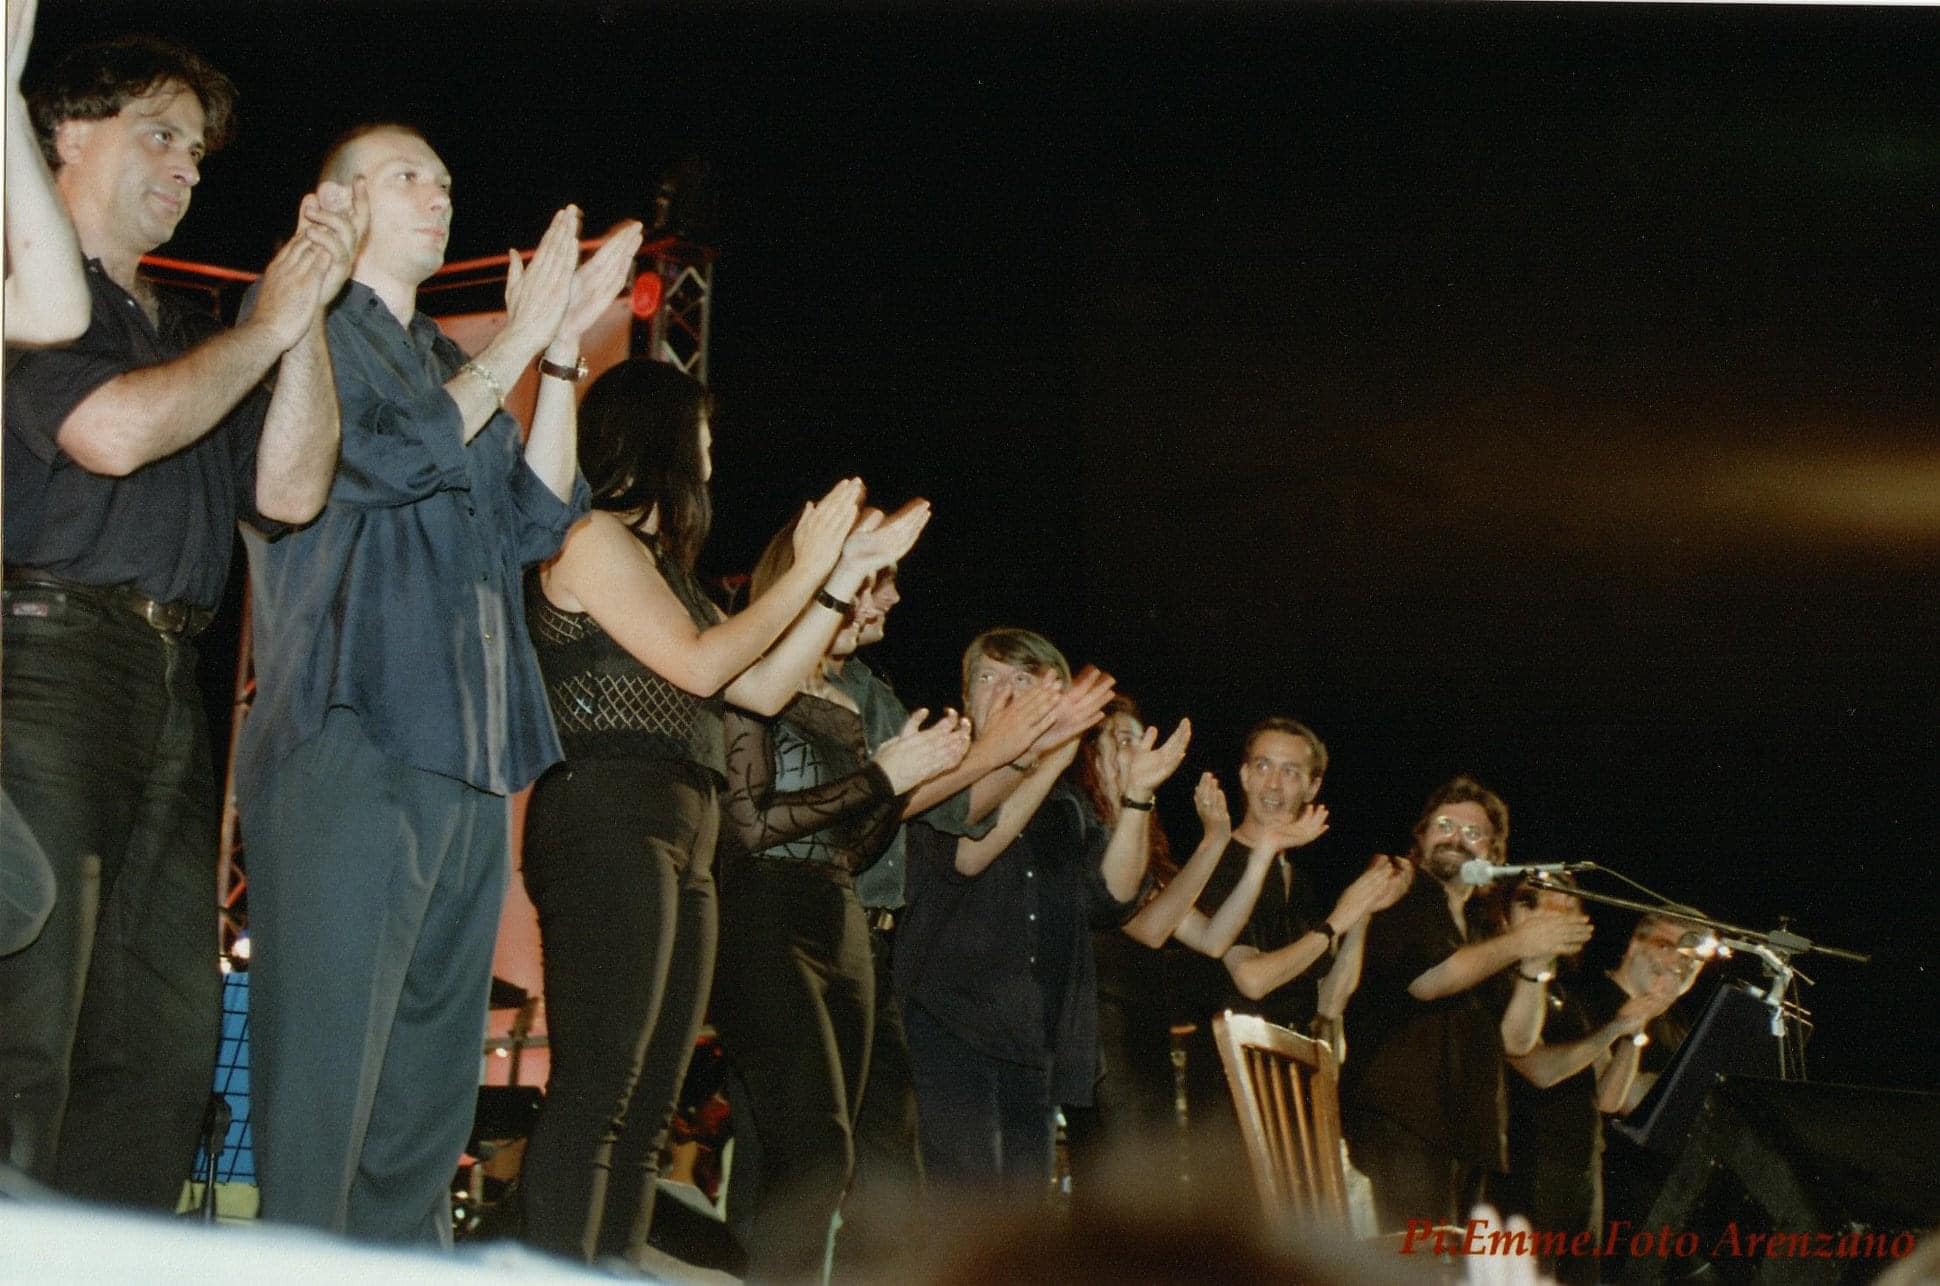 concerto Fabrizio de andre arenzano 8 agosto 1998